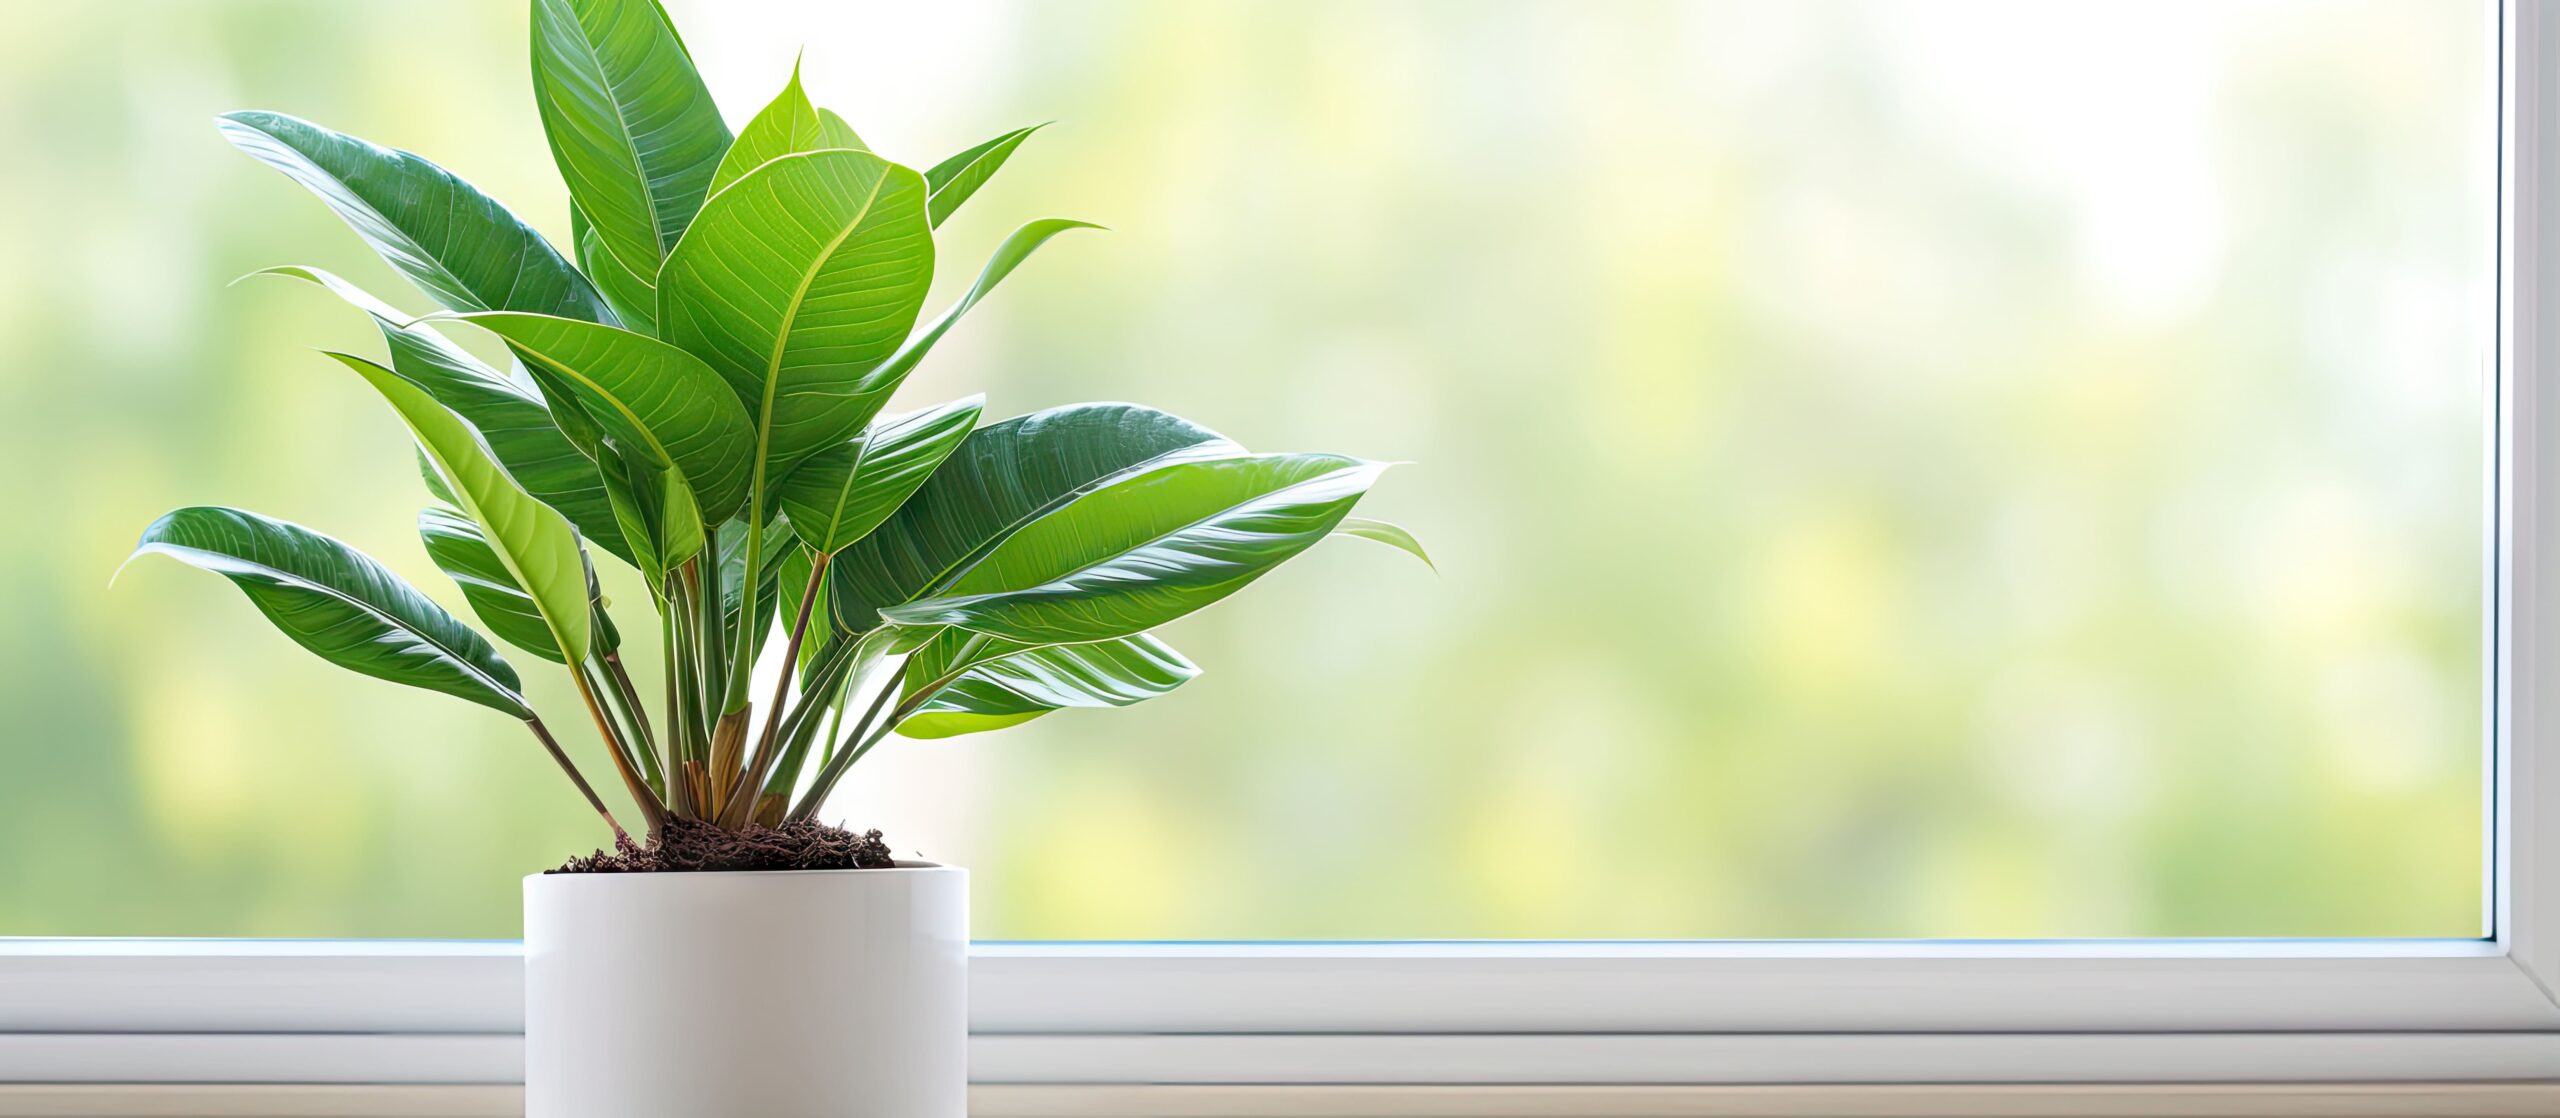 Photographie d'une plante d'intérieur luxuriante dans un pot blanc, sur le bord d'une fenêtre